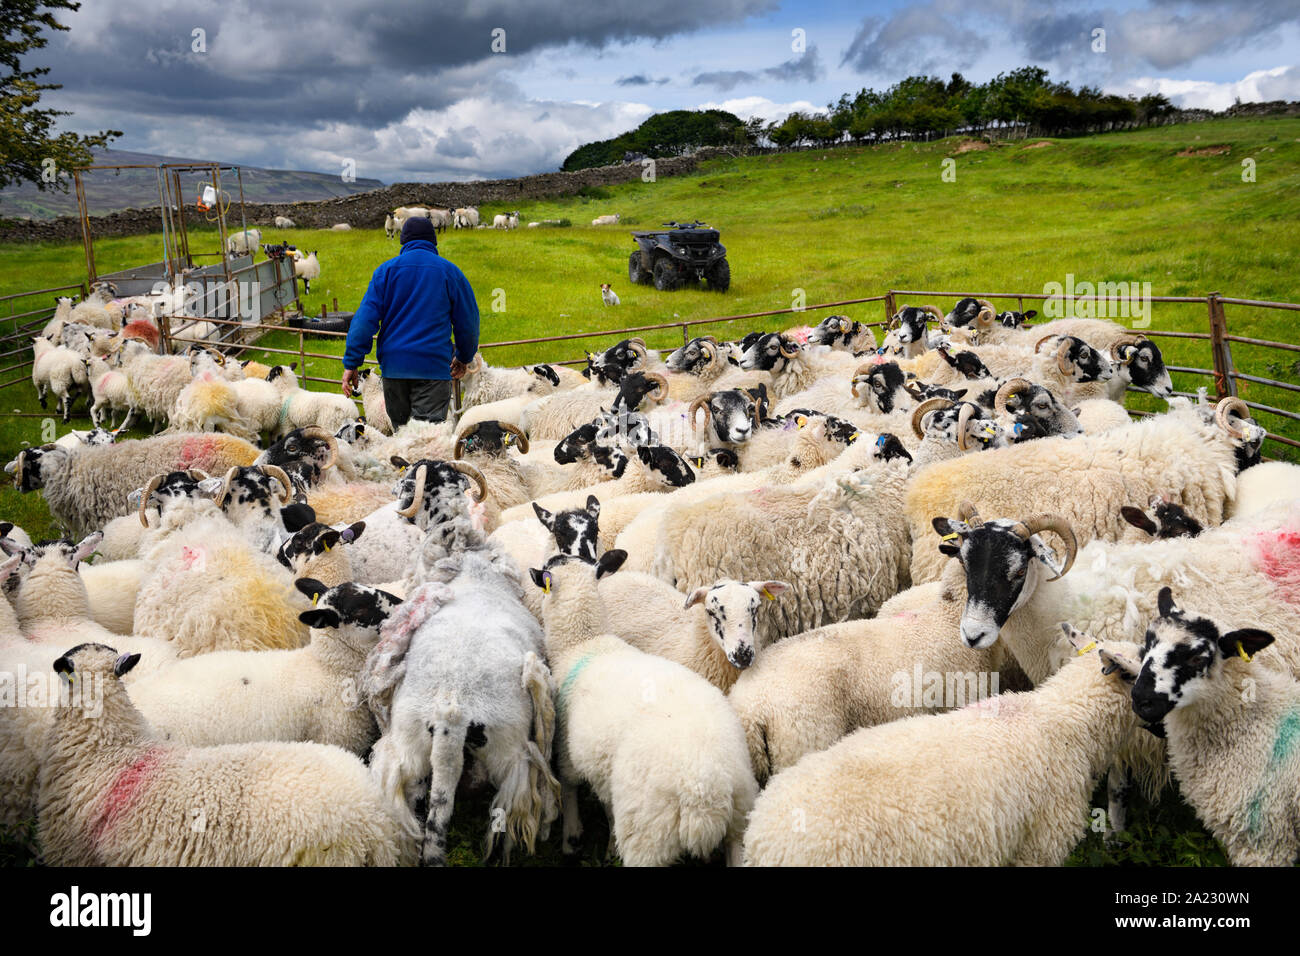 La collecte de groupe d'agriculteurs pour les moutons Swaledale inoculation coups sur une ferme dans le Yorkshire Dales National Park dans la vallée de la rivière Swale Banque D'Images